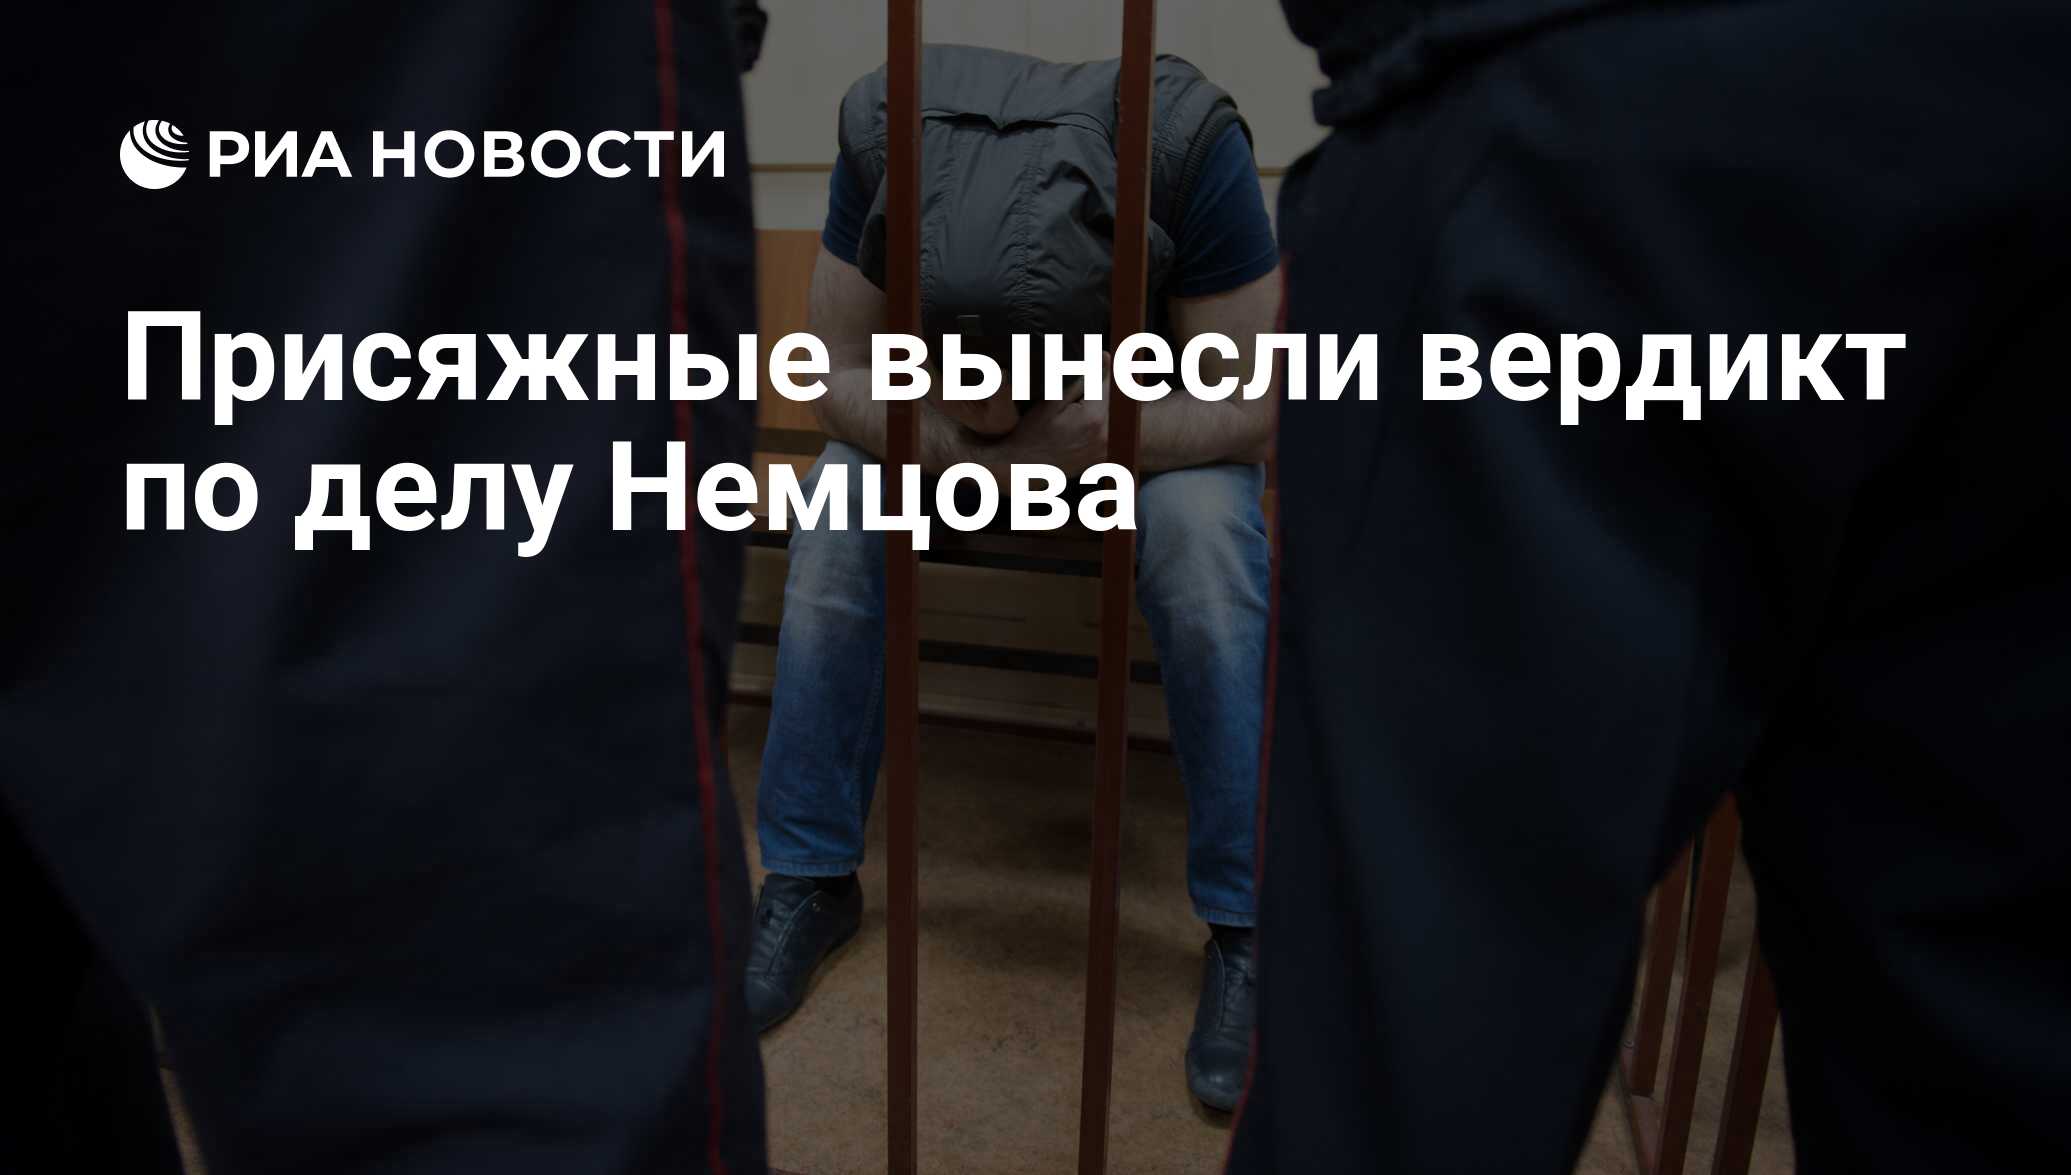 Присяжные выносят вердикт. Уголовное дело Немцова фото.